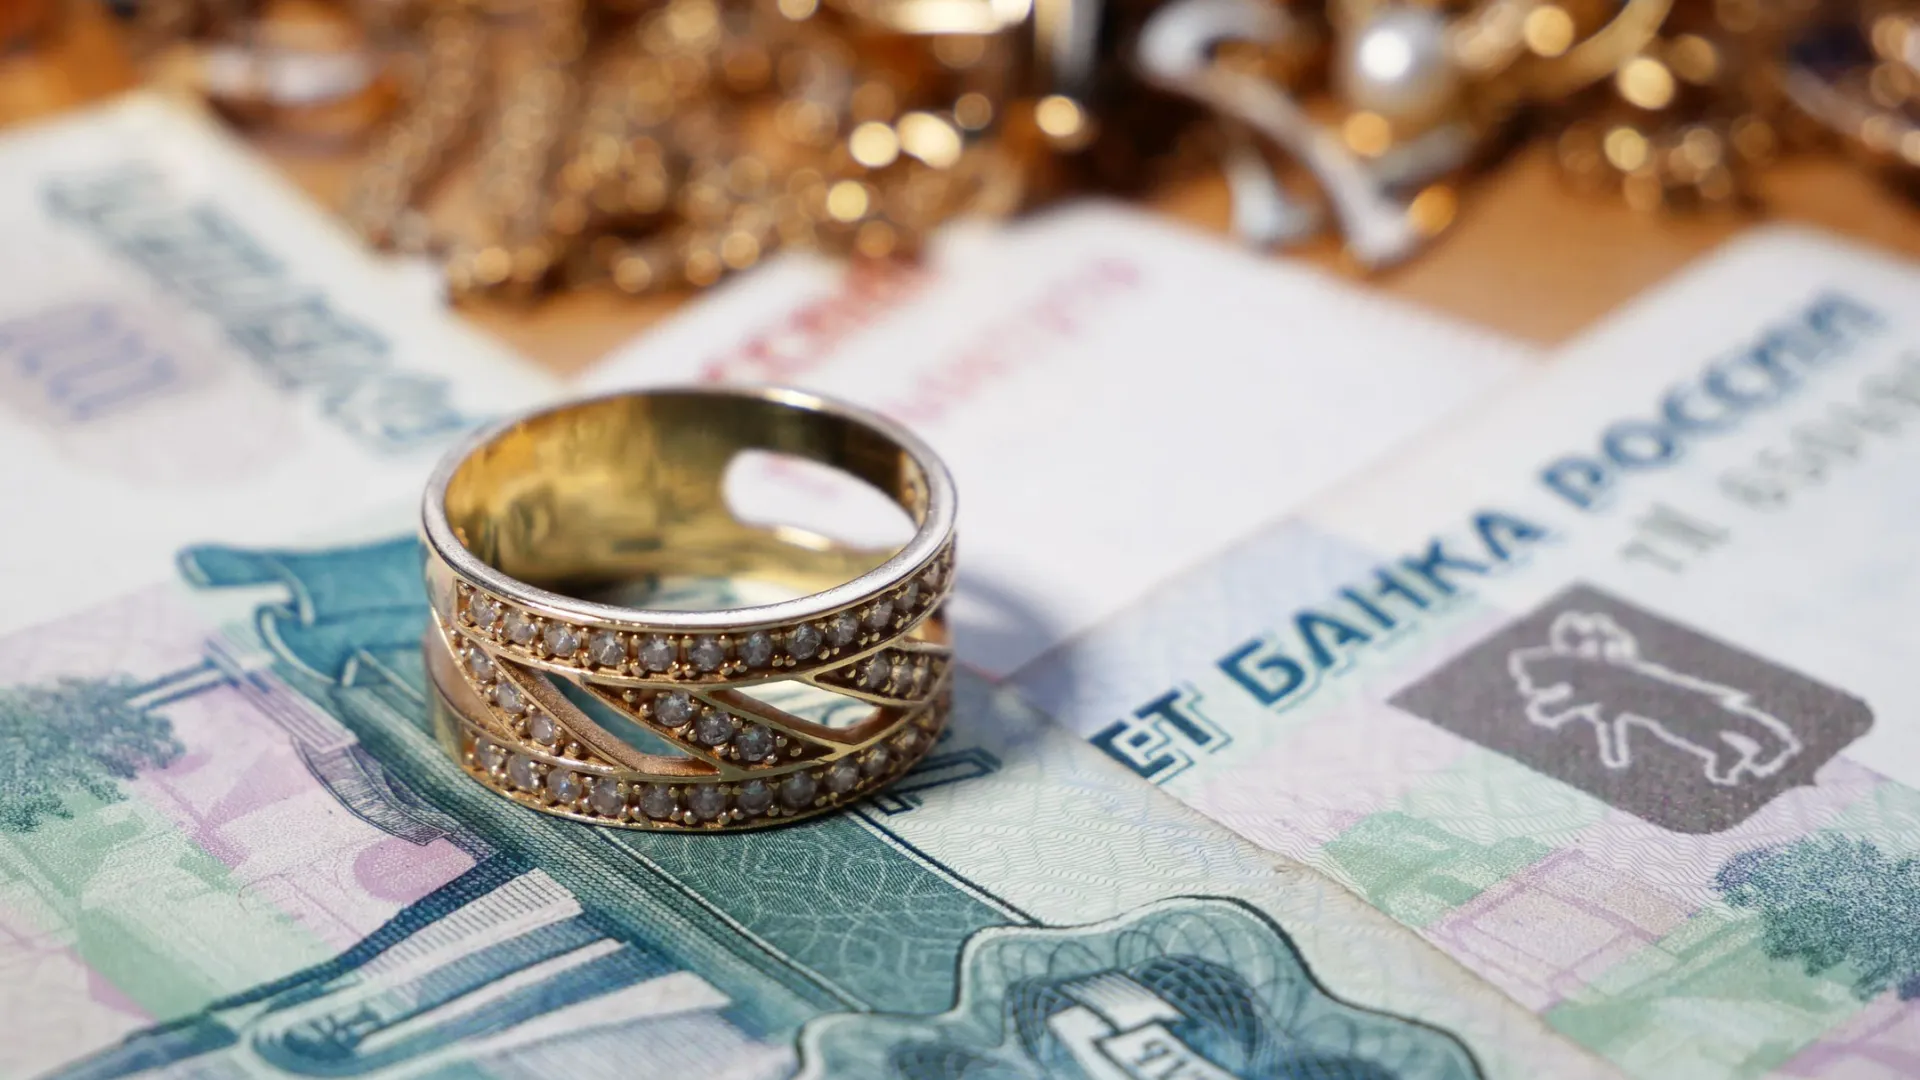 За перстень печать продавец просит 2,8 тысячи рублей. Фото: LanKS/Shutterstock/Fotodom